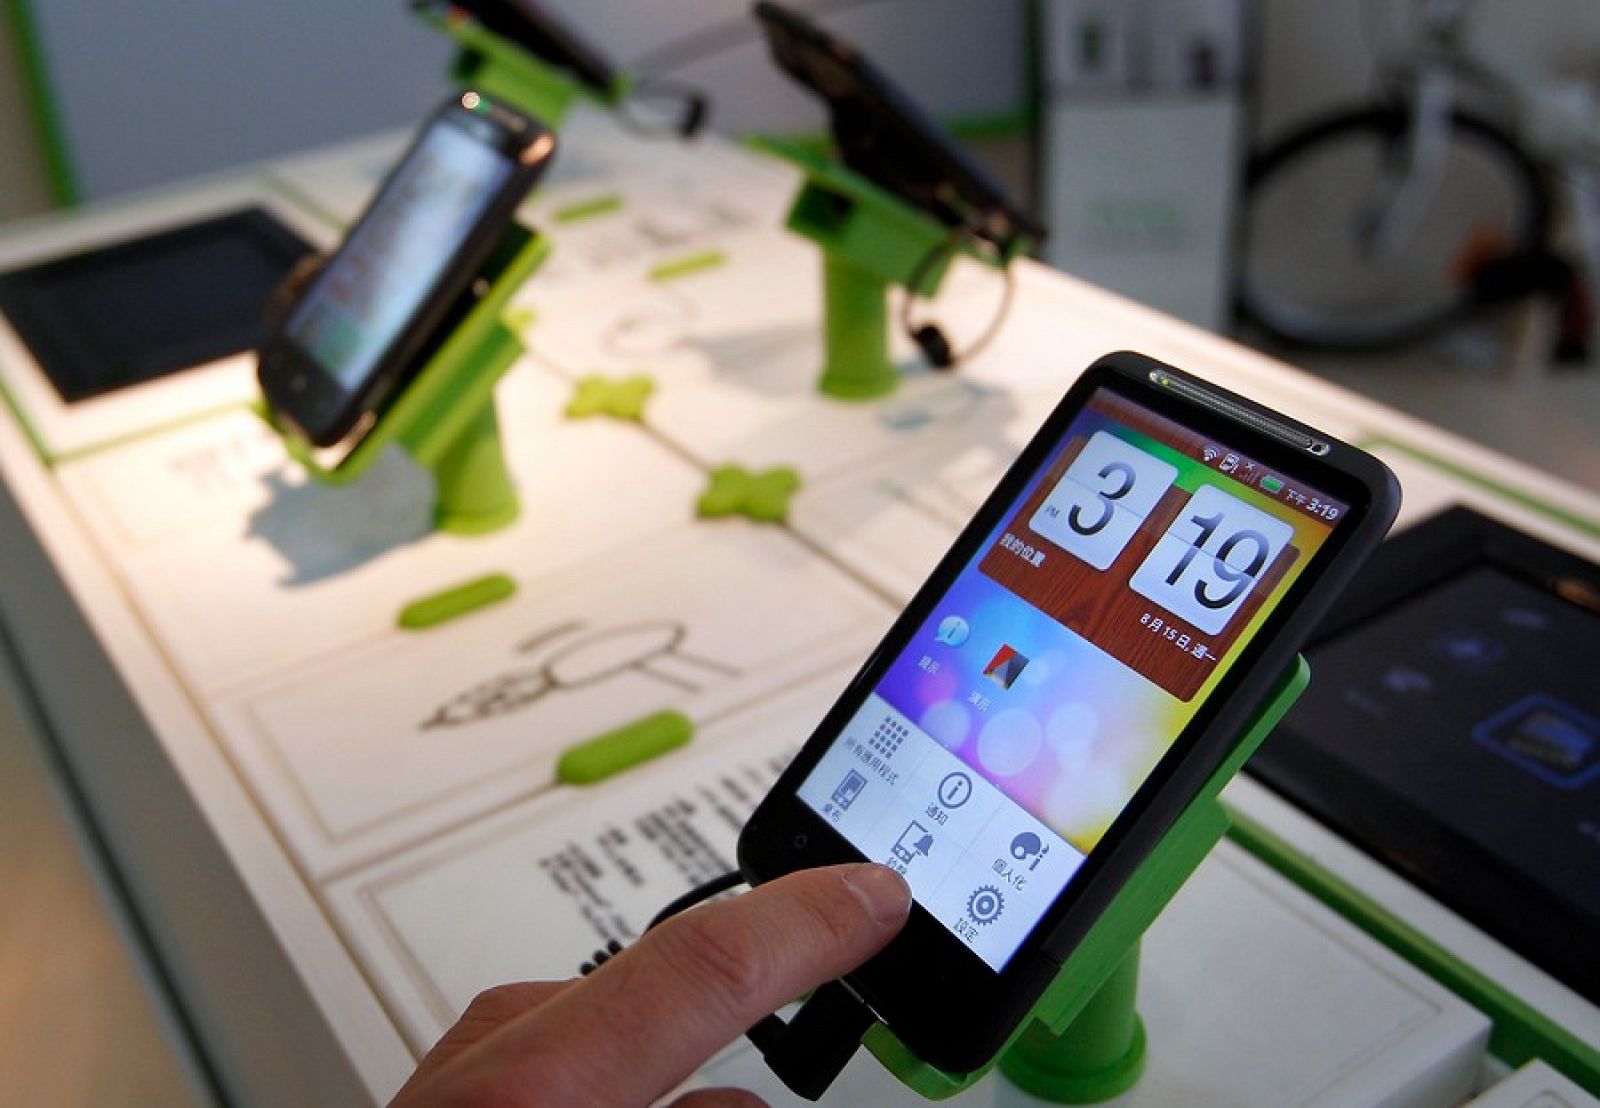 Un usuario comprueba cómo funciona el HTC Desire, uno de los terminales con sistema operativo Android